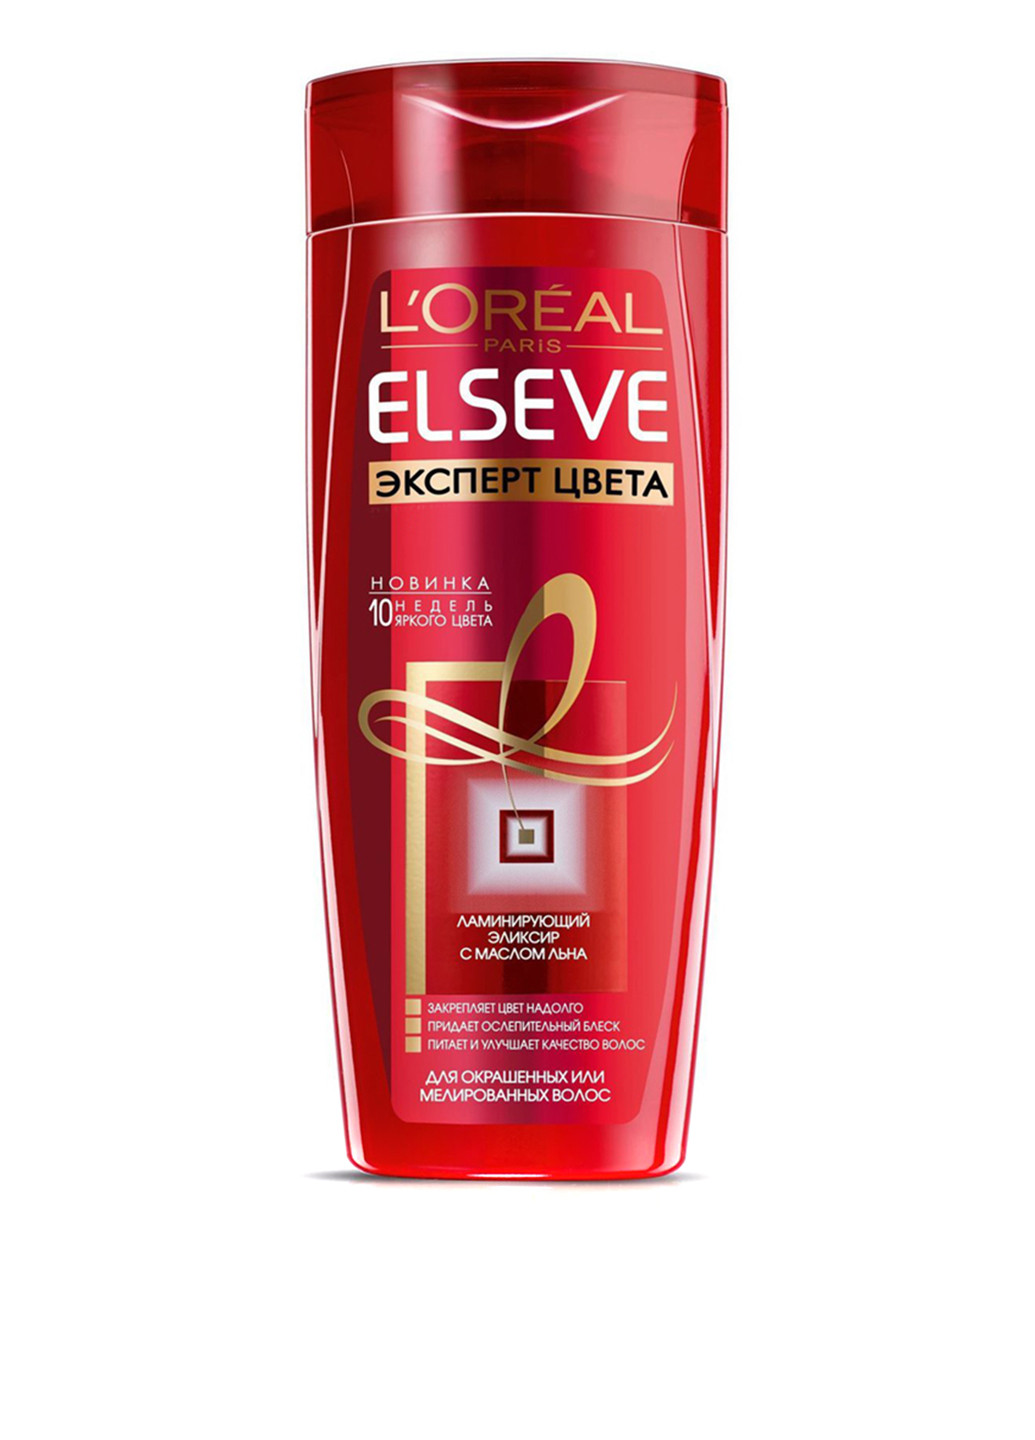 Шампунь для окрашенных волос "Эксперт цвета" L'Oreal Elseve Shampoo 250 мл L'Oreal Paris (88095508)